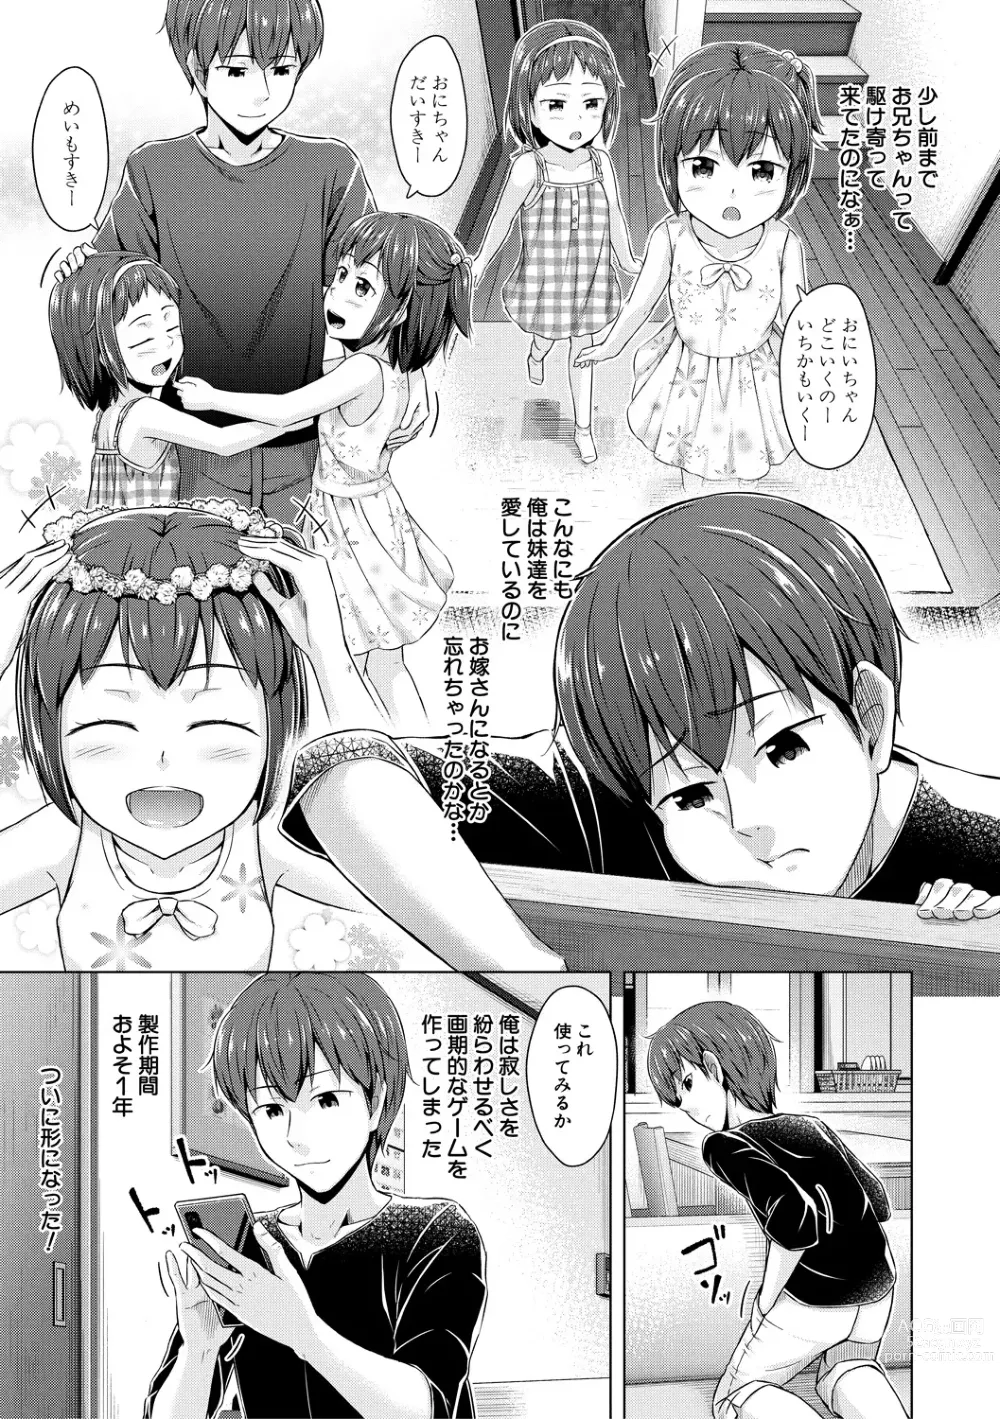 Page 7 of manga Imouto Saimin  Appli - SISTER HYPNOSIS app